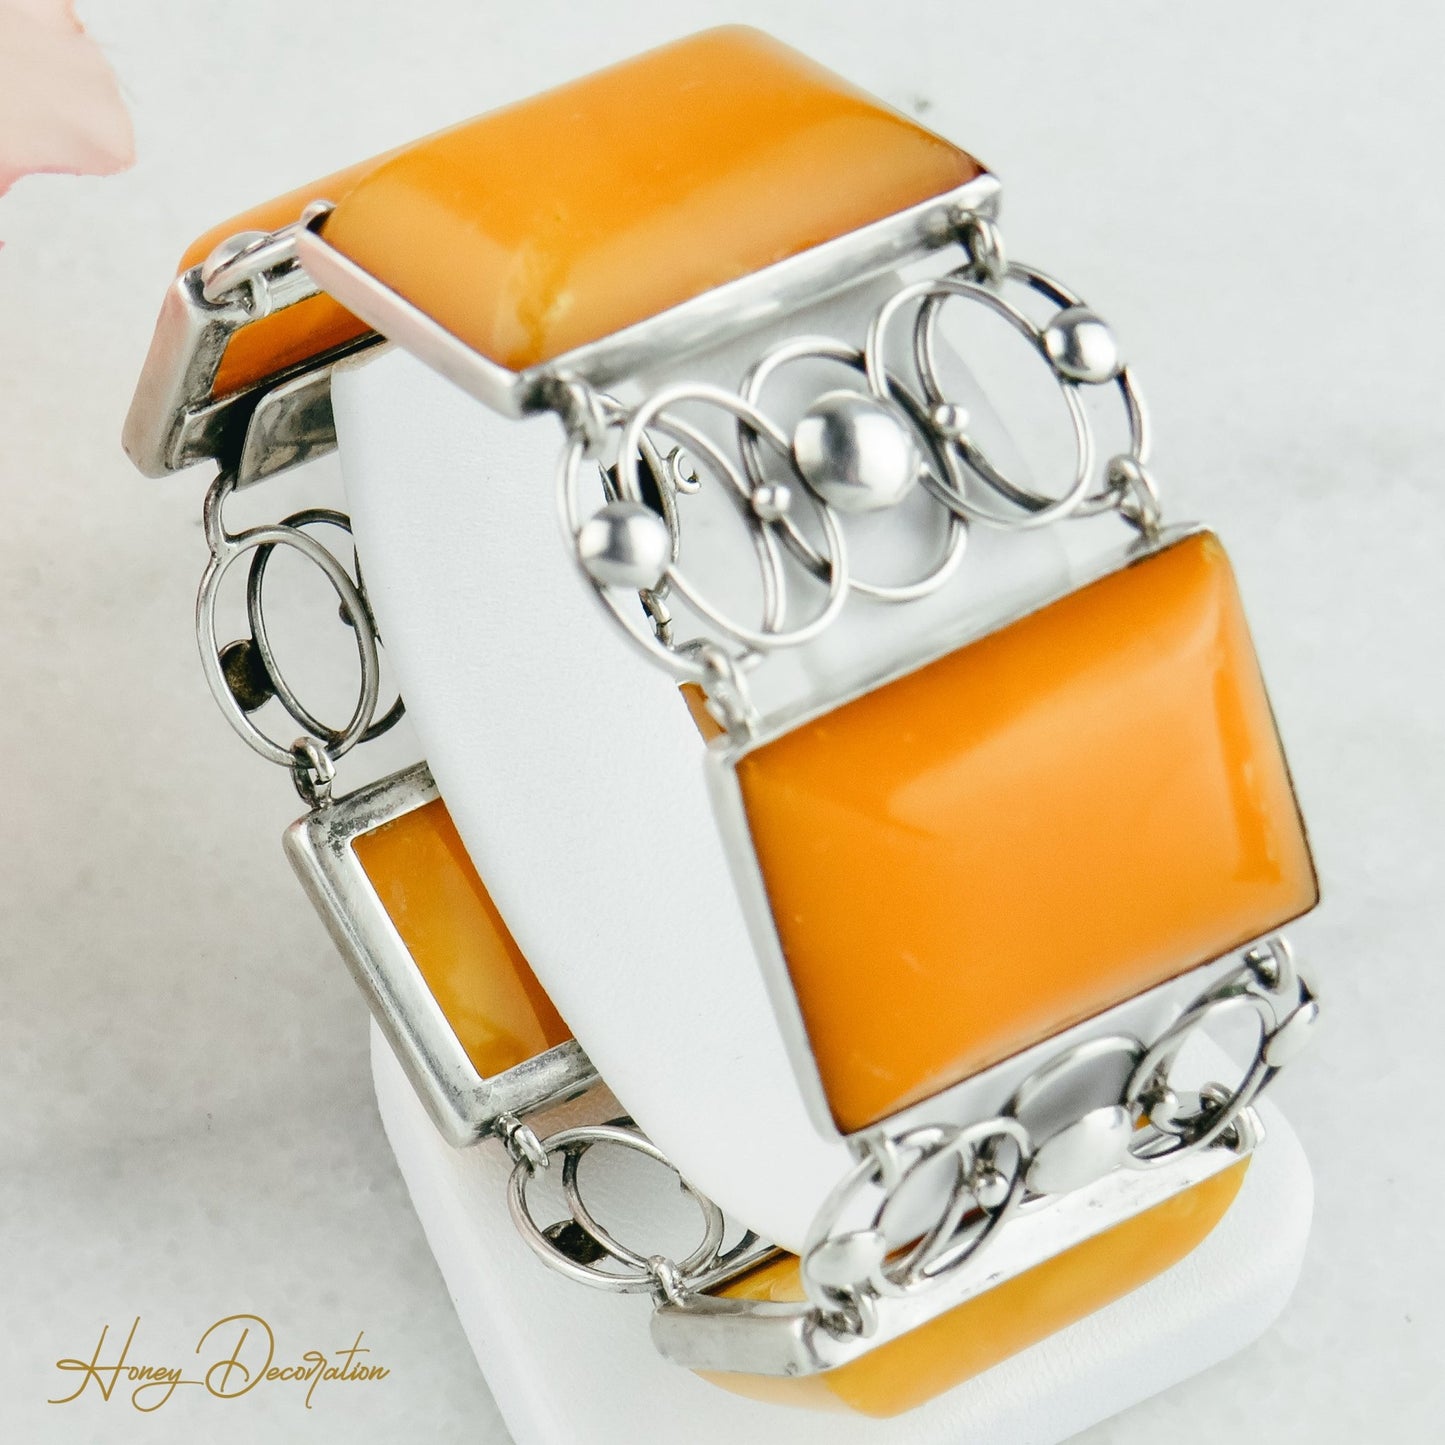 Vintage-Armband aus Silber mit Bernstein - Honey Decoration